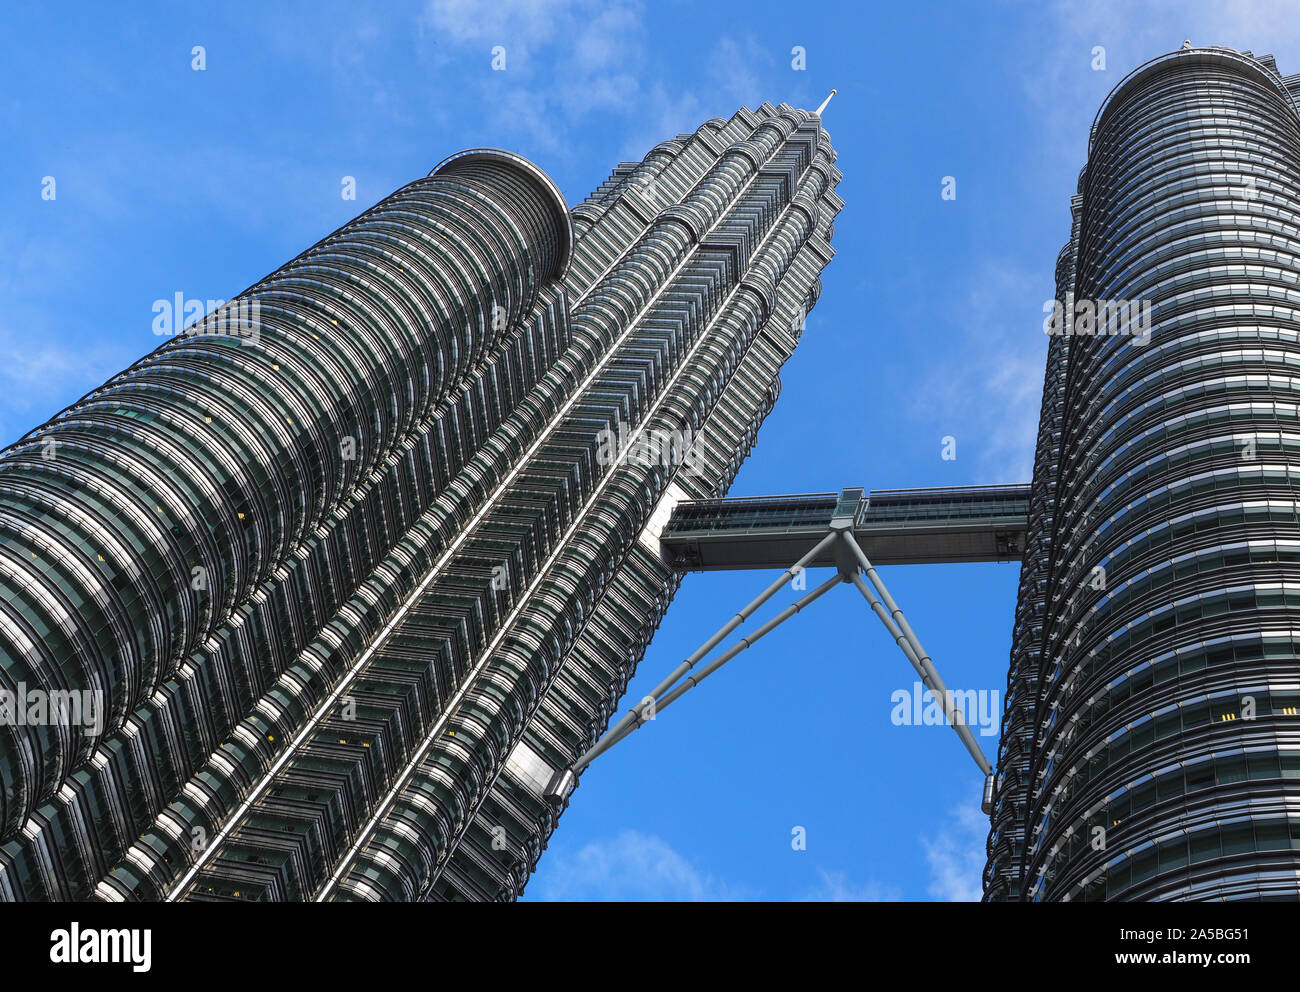 Las Torres Petronas Sky Bridge, el puente del cielo en el piso 42 de las torres gemelas Petronas, en Kuala Lumpur, Malasia Foto de stock